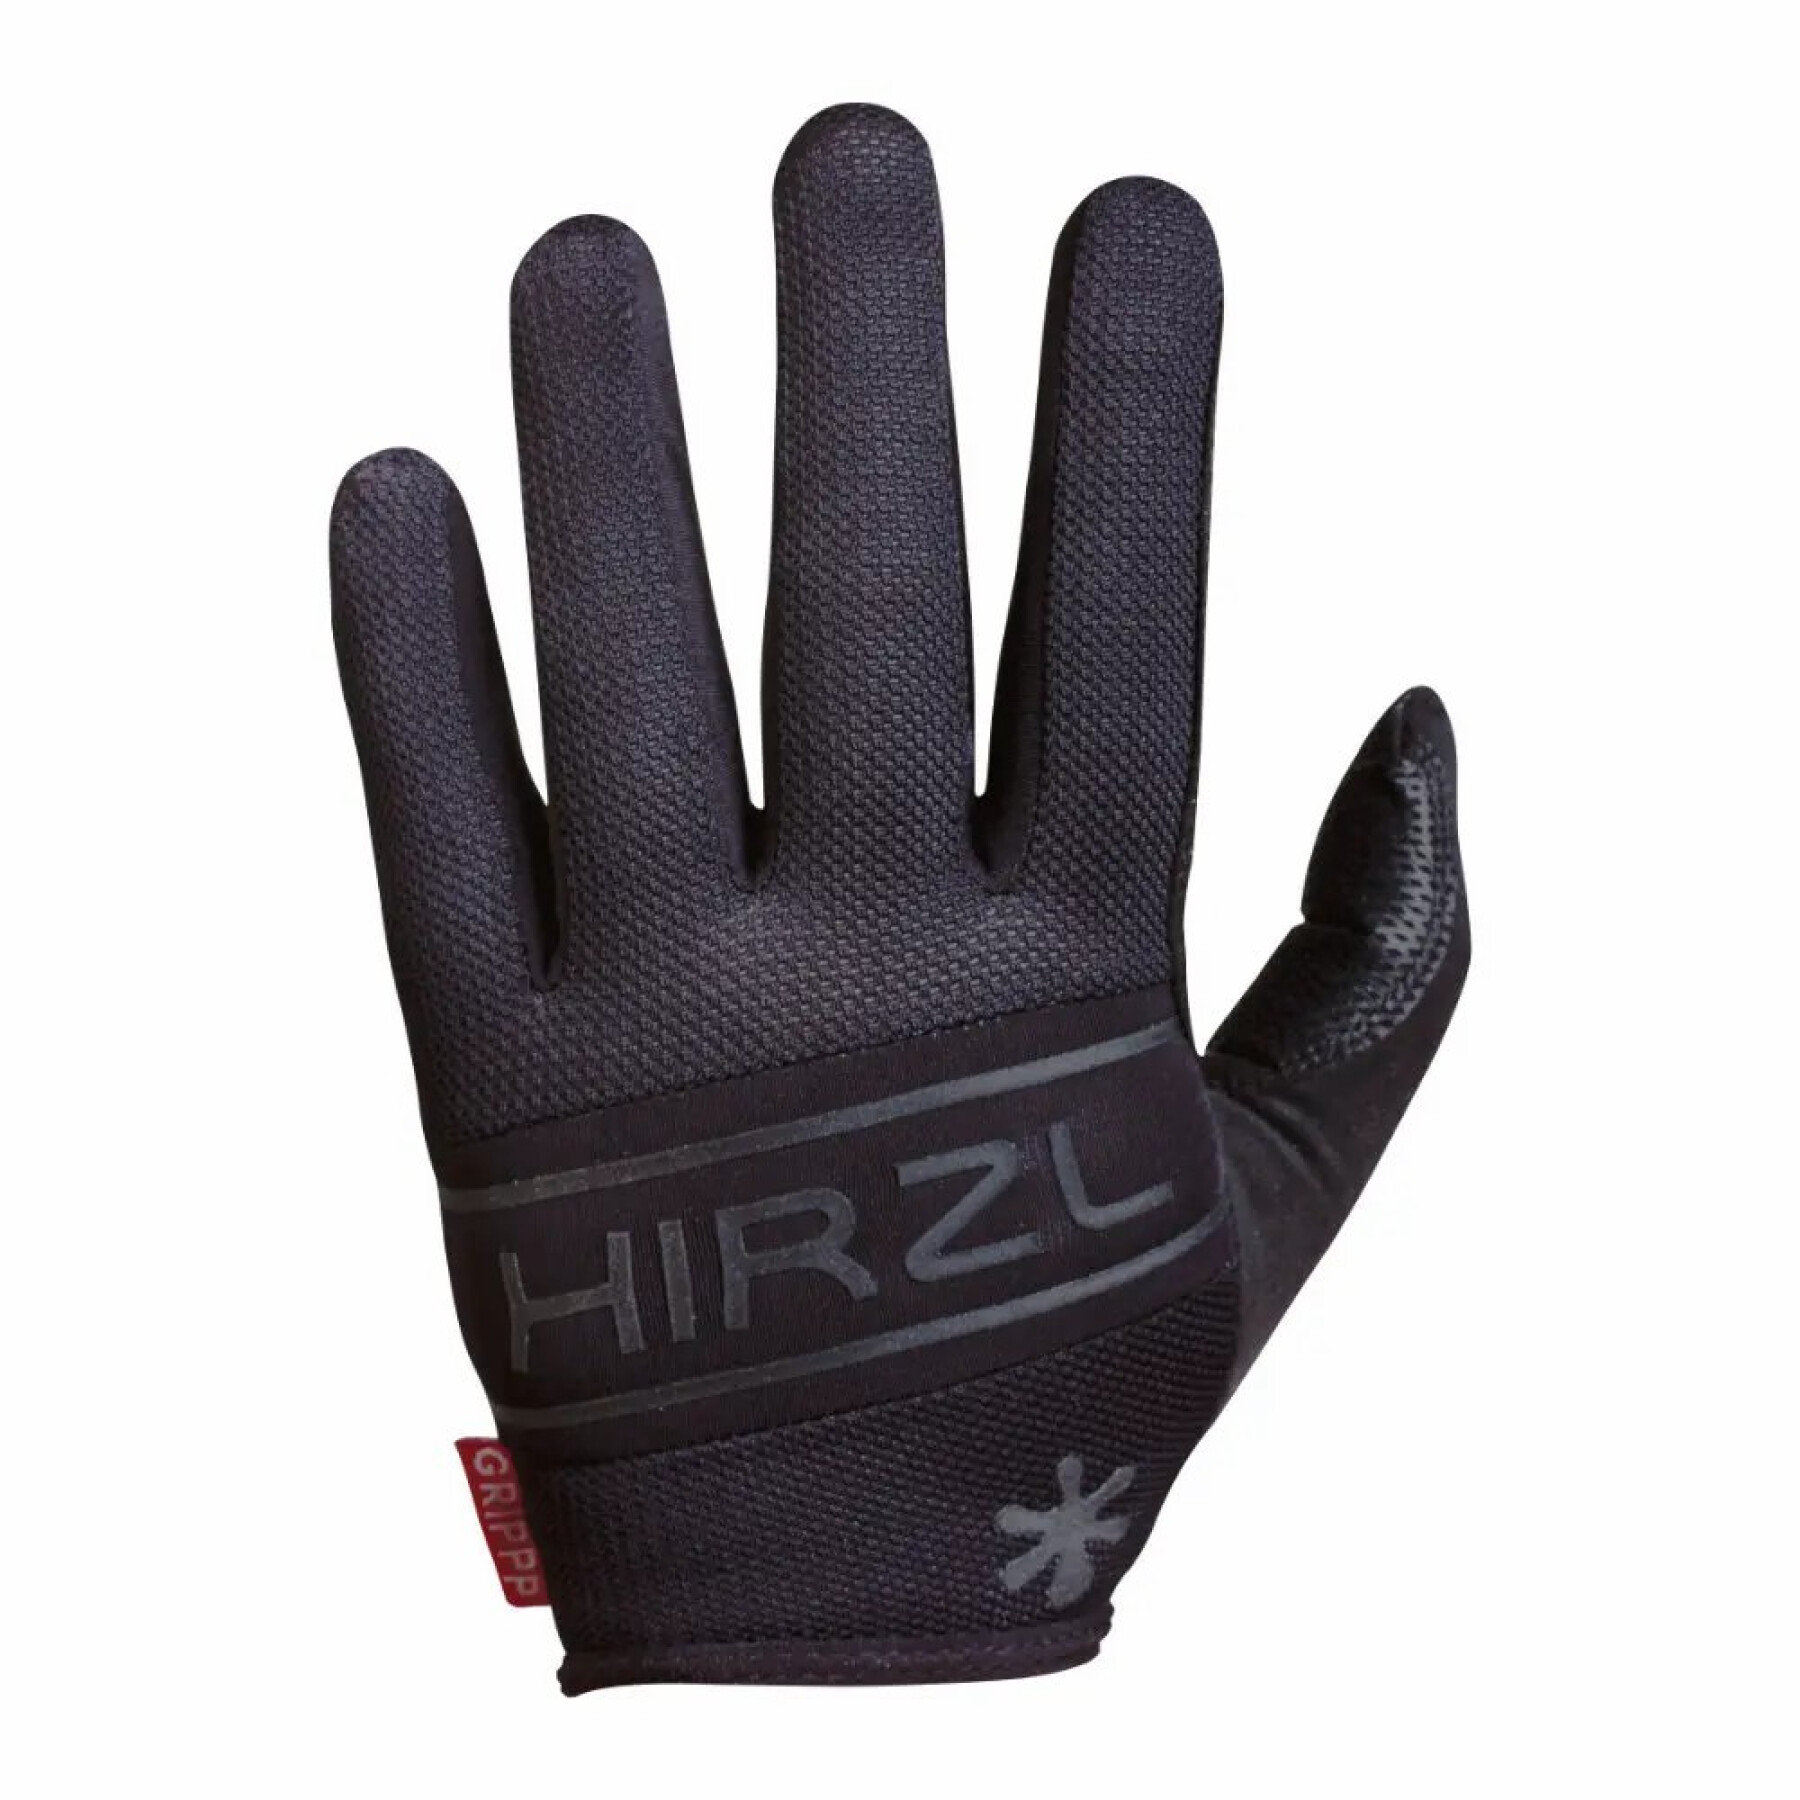 Lange Handschuhe Hirzl Grippp Comfort FF (x2)